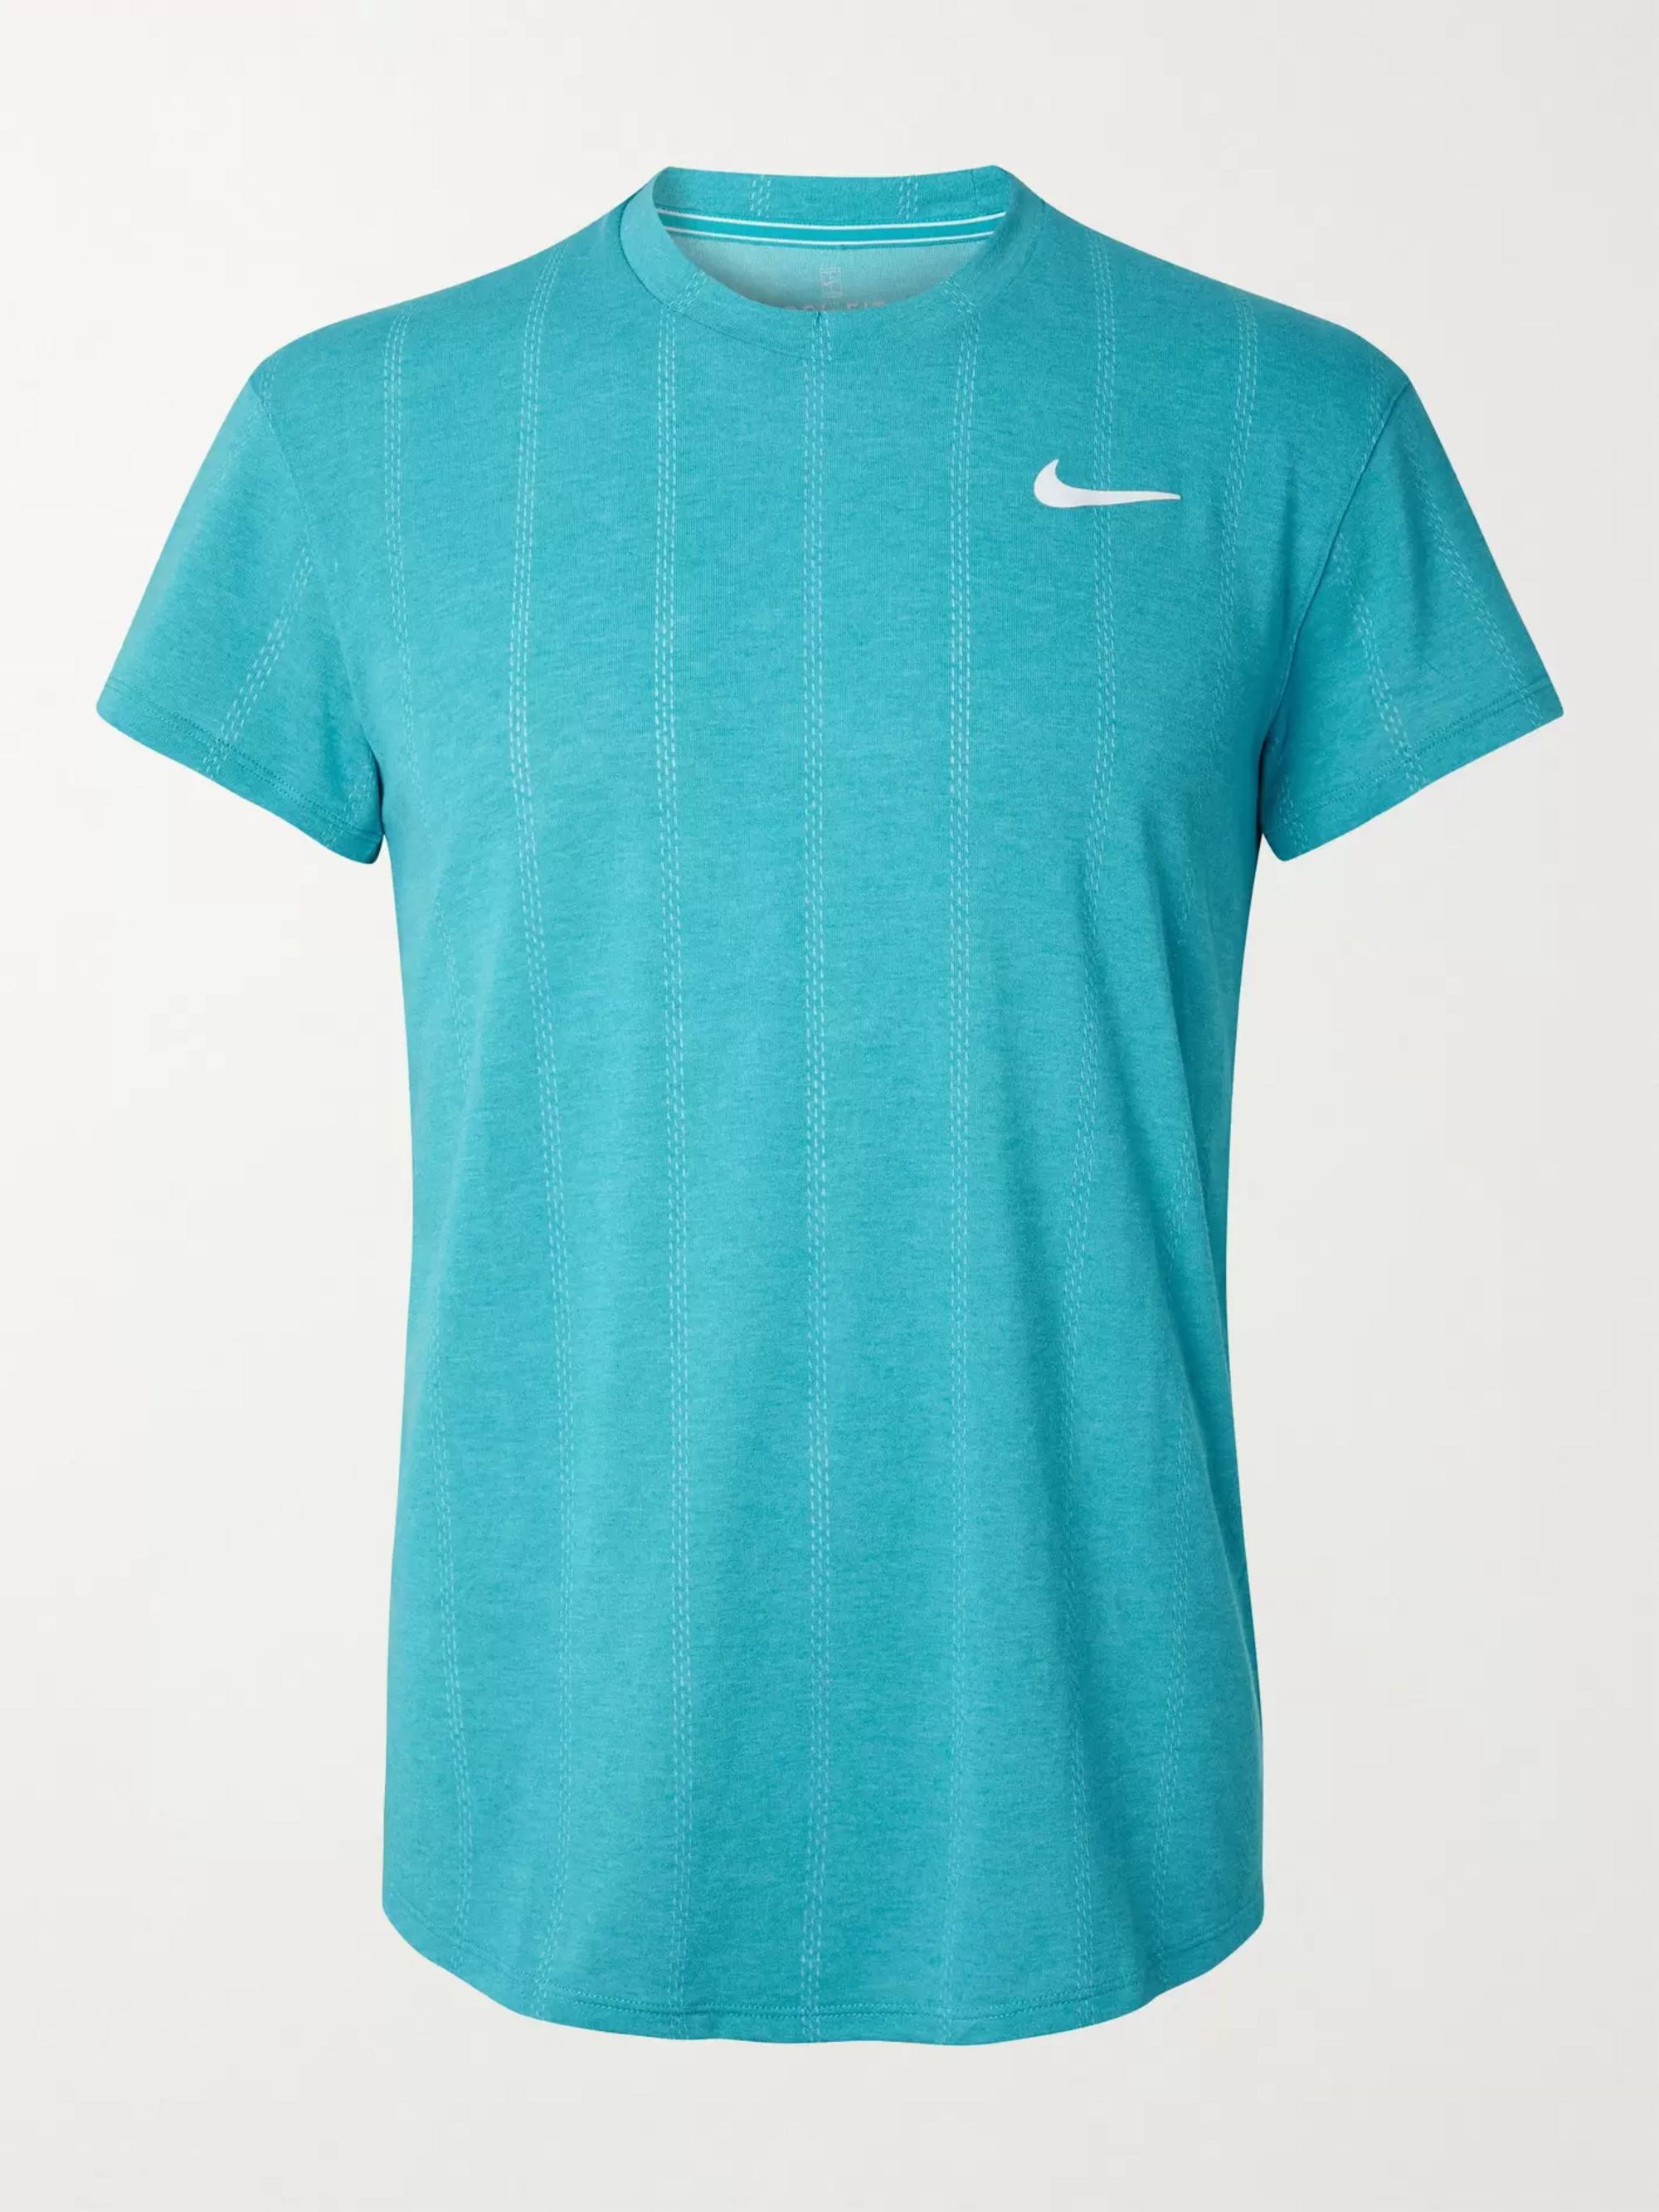 dri fit tennis shirts